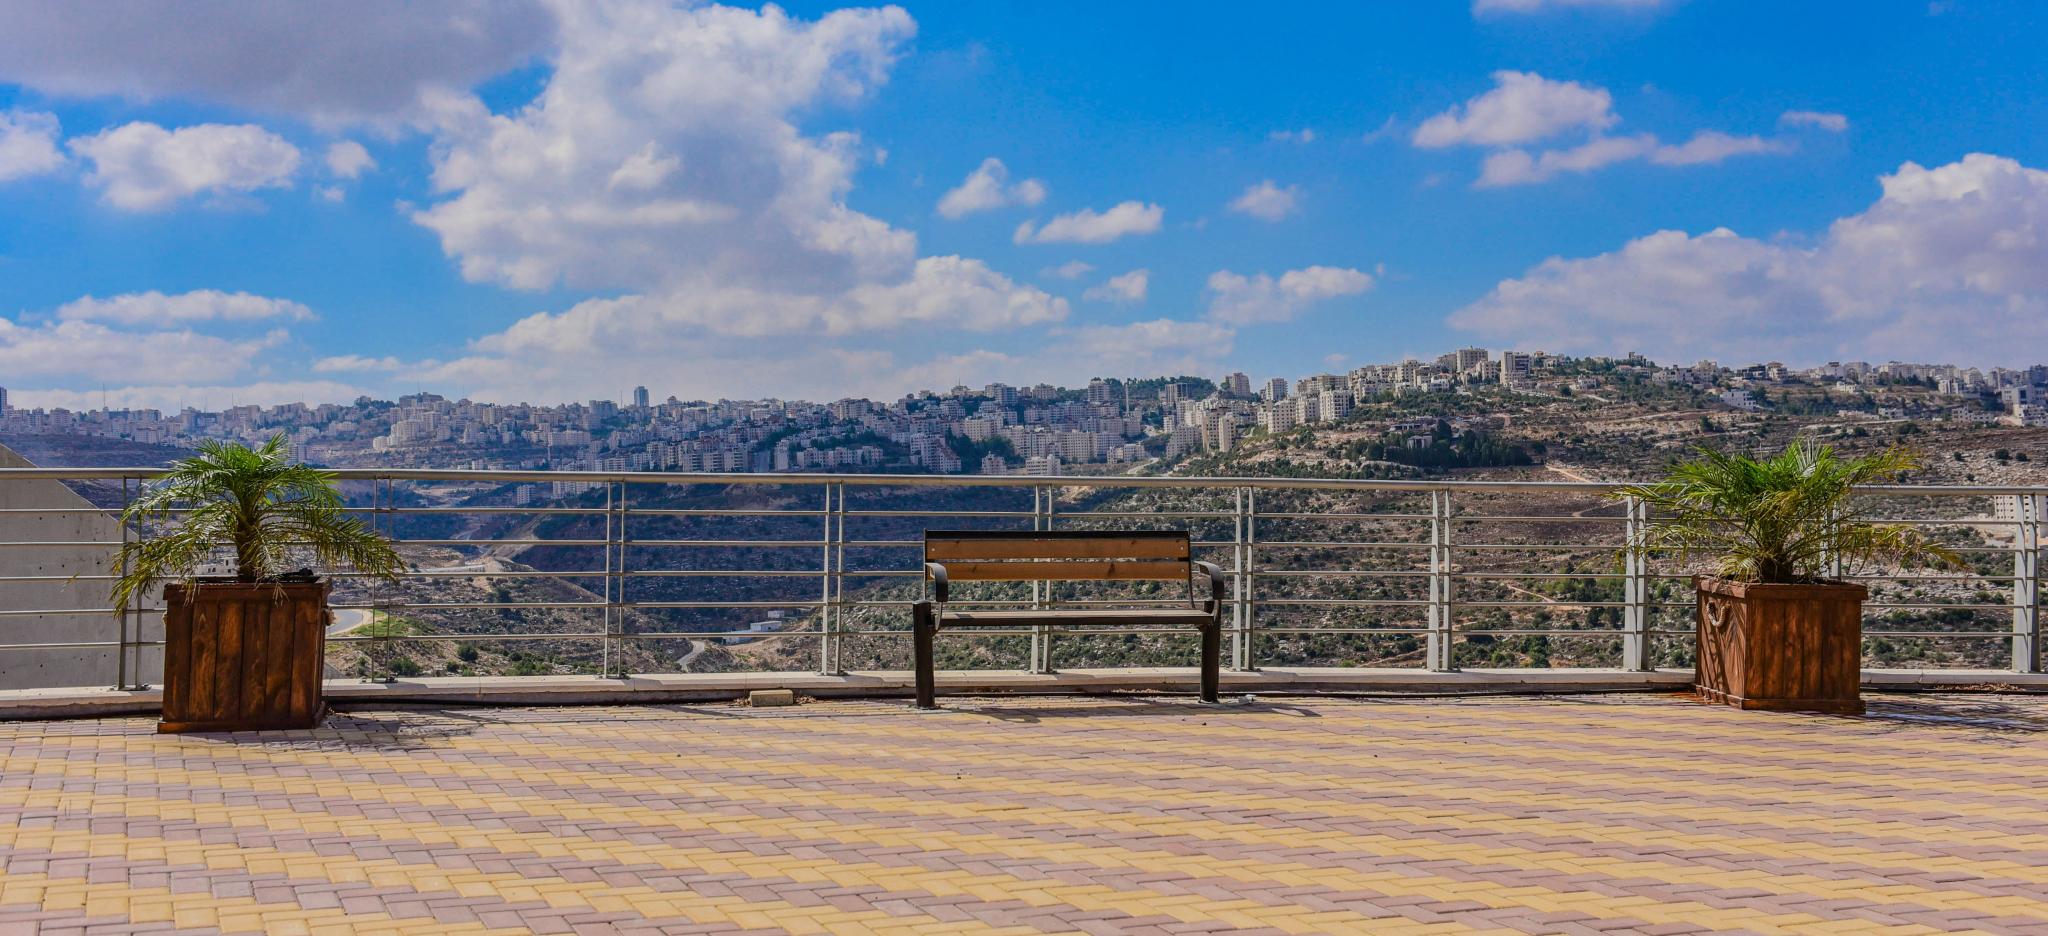 AAUP View – Ramallah Campus